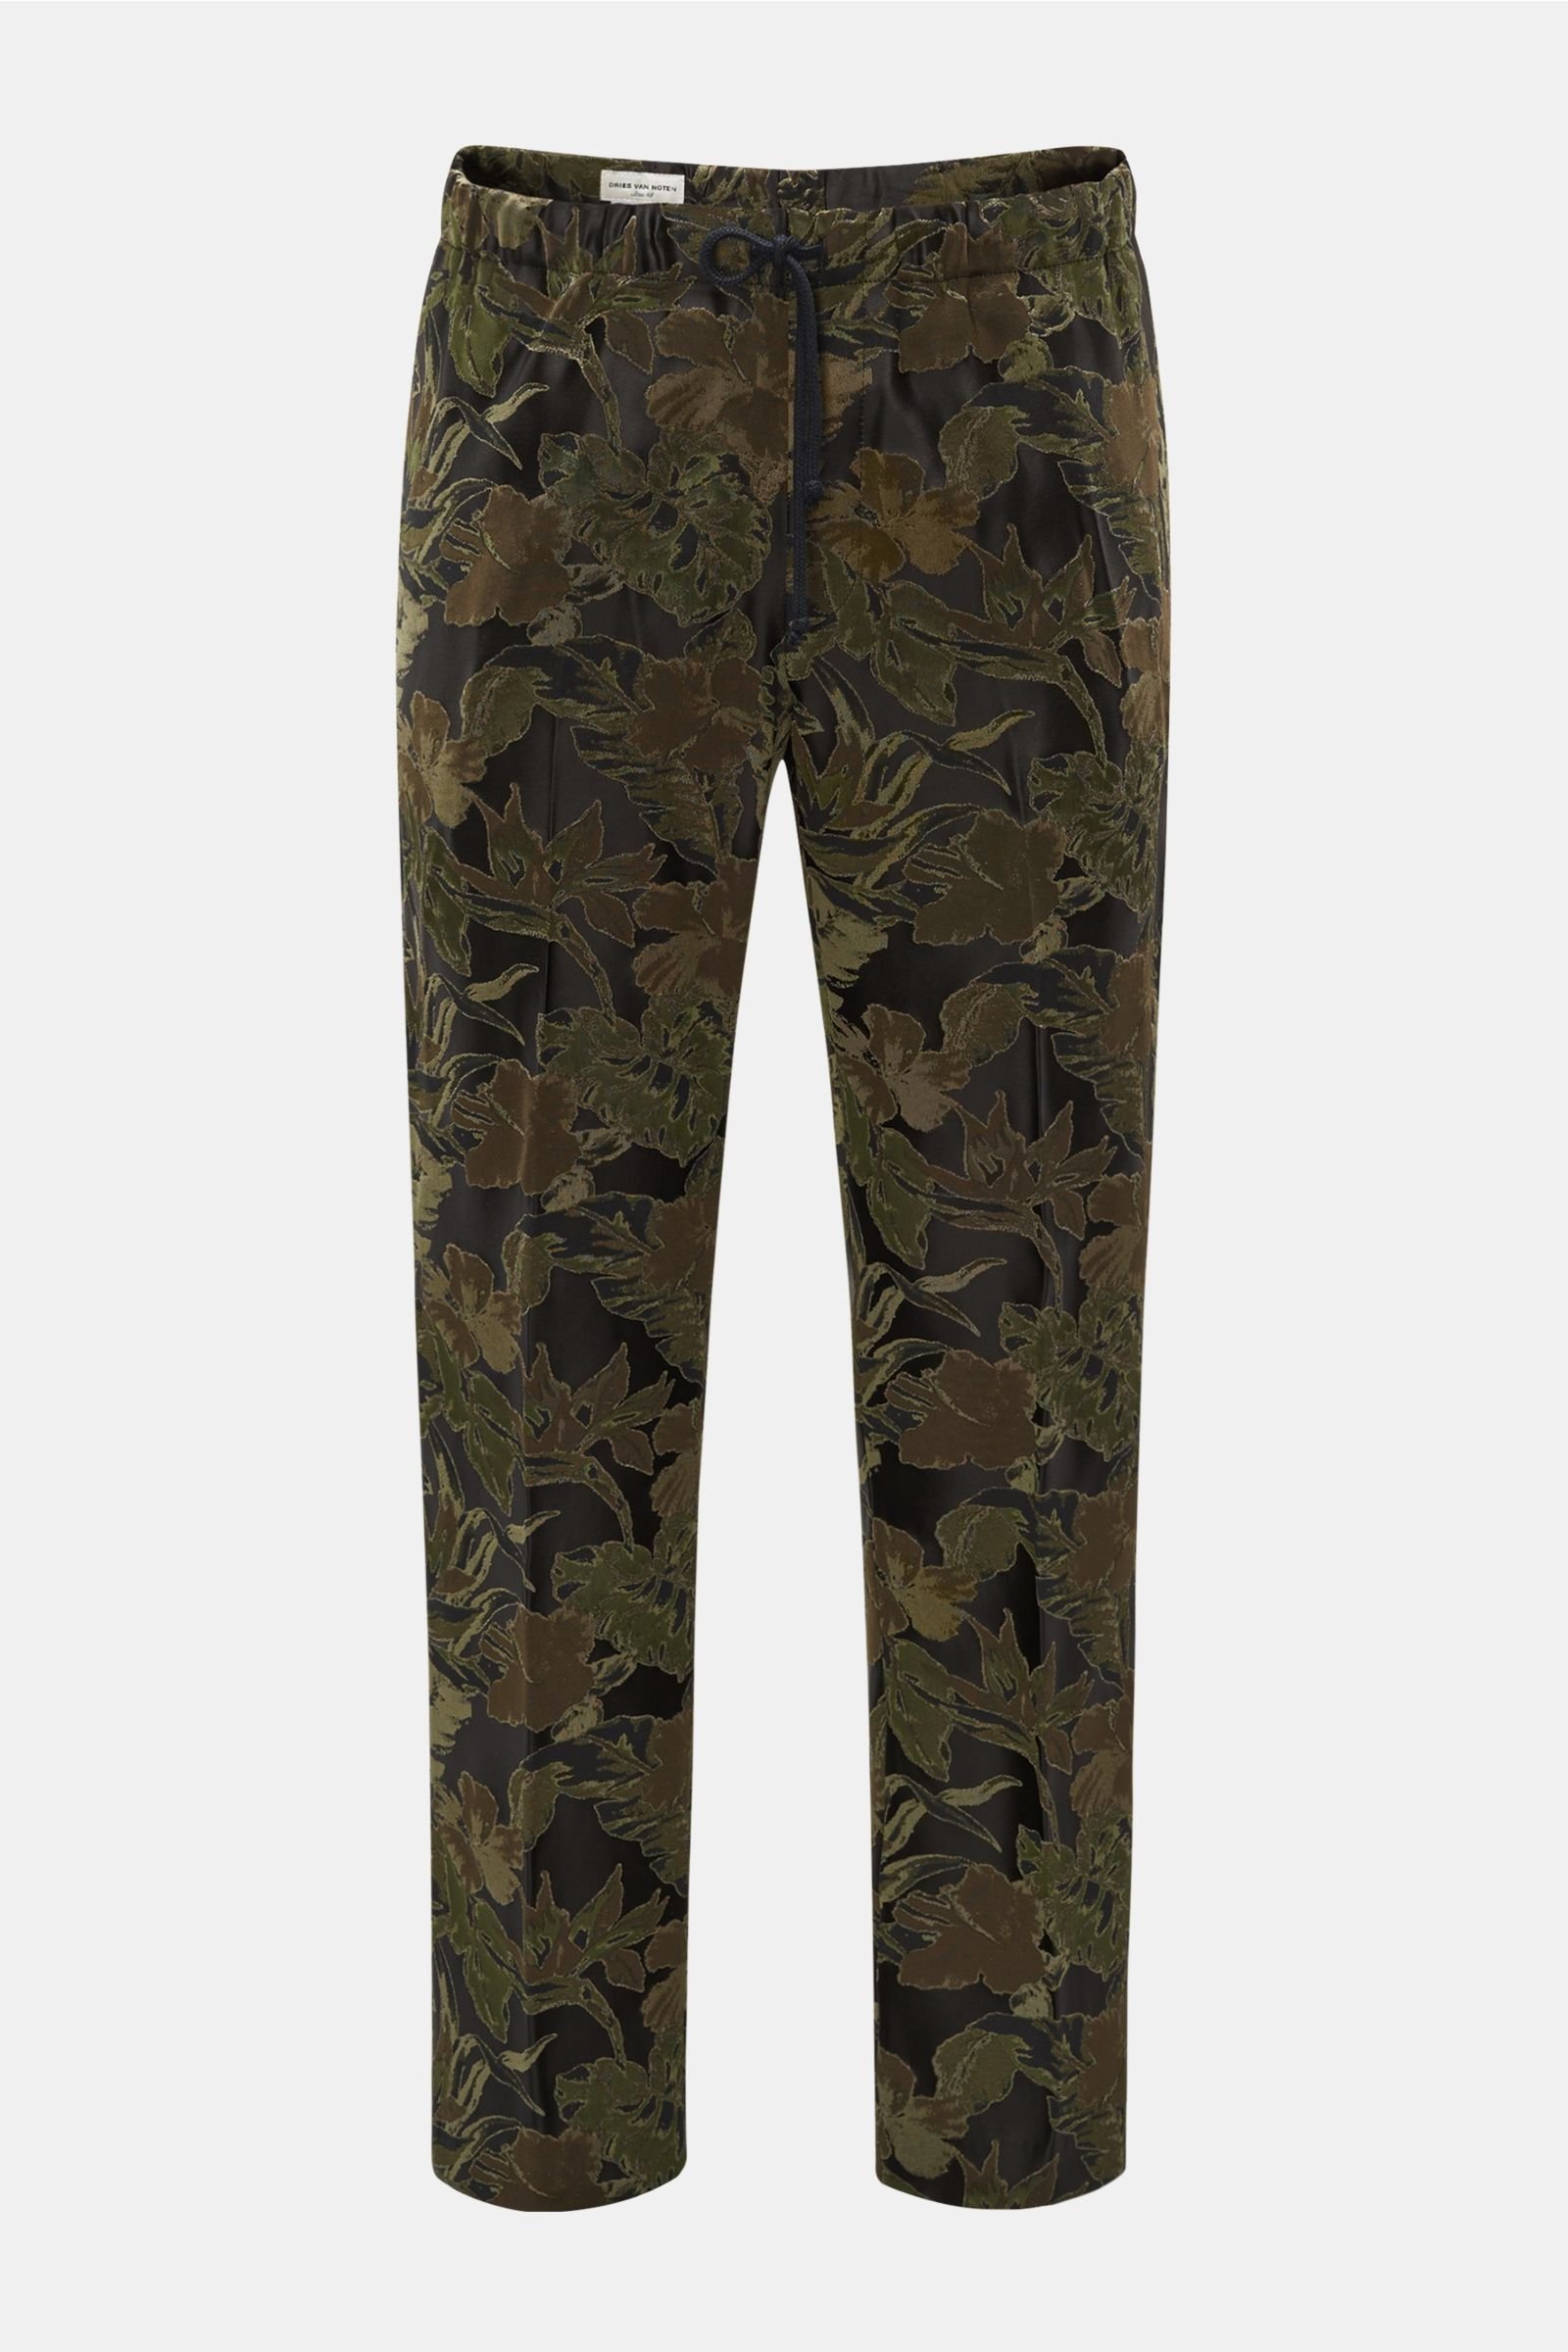 Jogger pants olive/black patterned